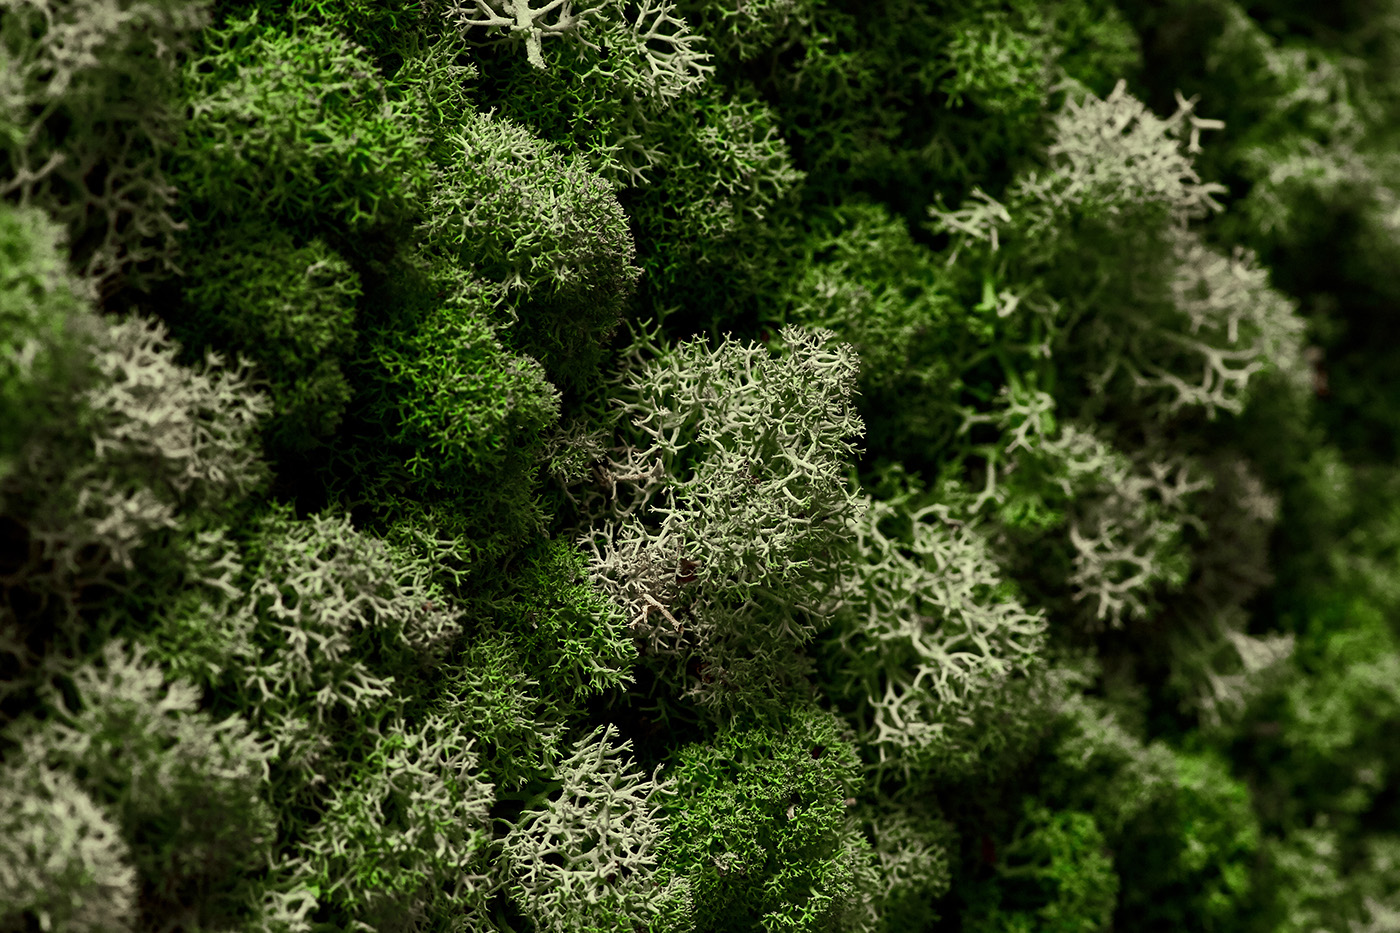 Reindeer lichen mosss texture Natureal background nirway Scandinavian design